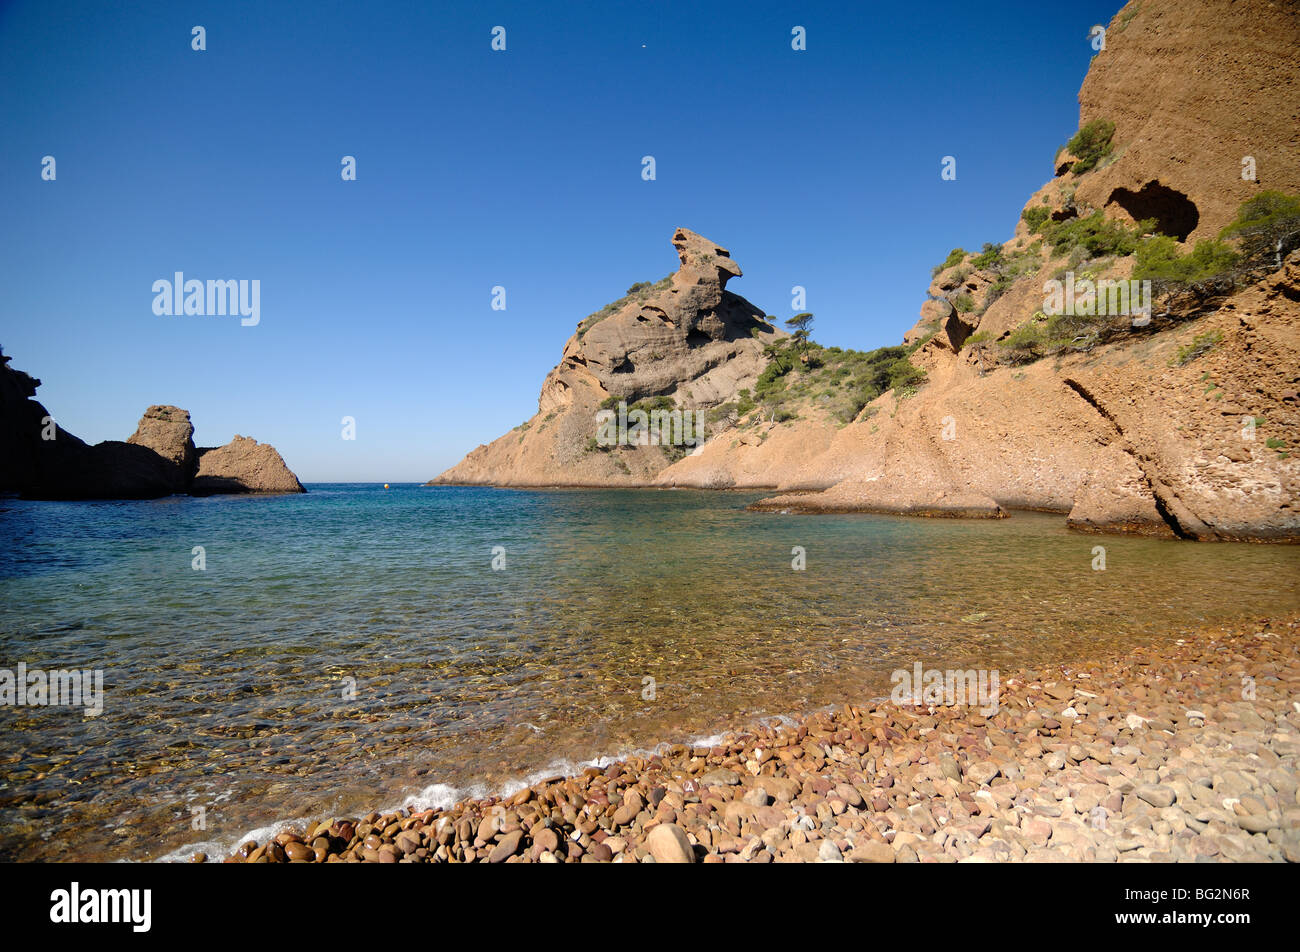 Menschenleer, Pebble Beach, Bay & schmalen Meeresarm, Calanque de Figuerolles, Mittelmeerküste, La Ciotat, Provence, Frankreich Stockfoto